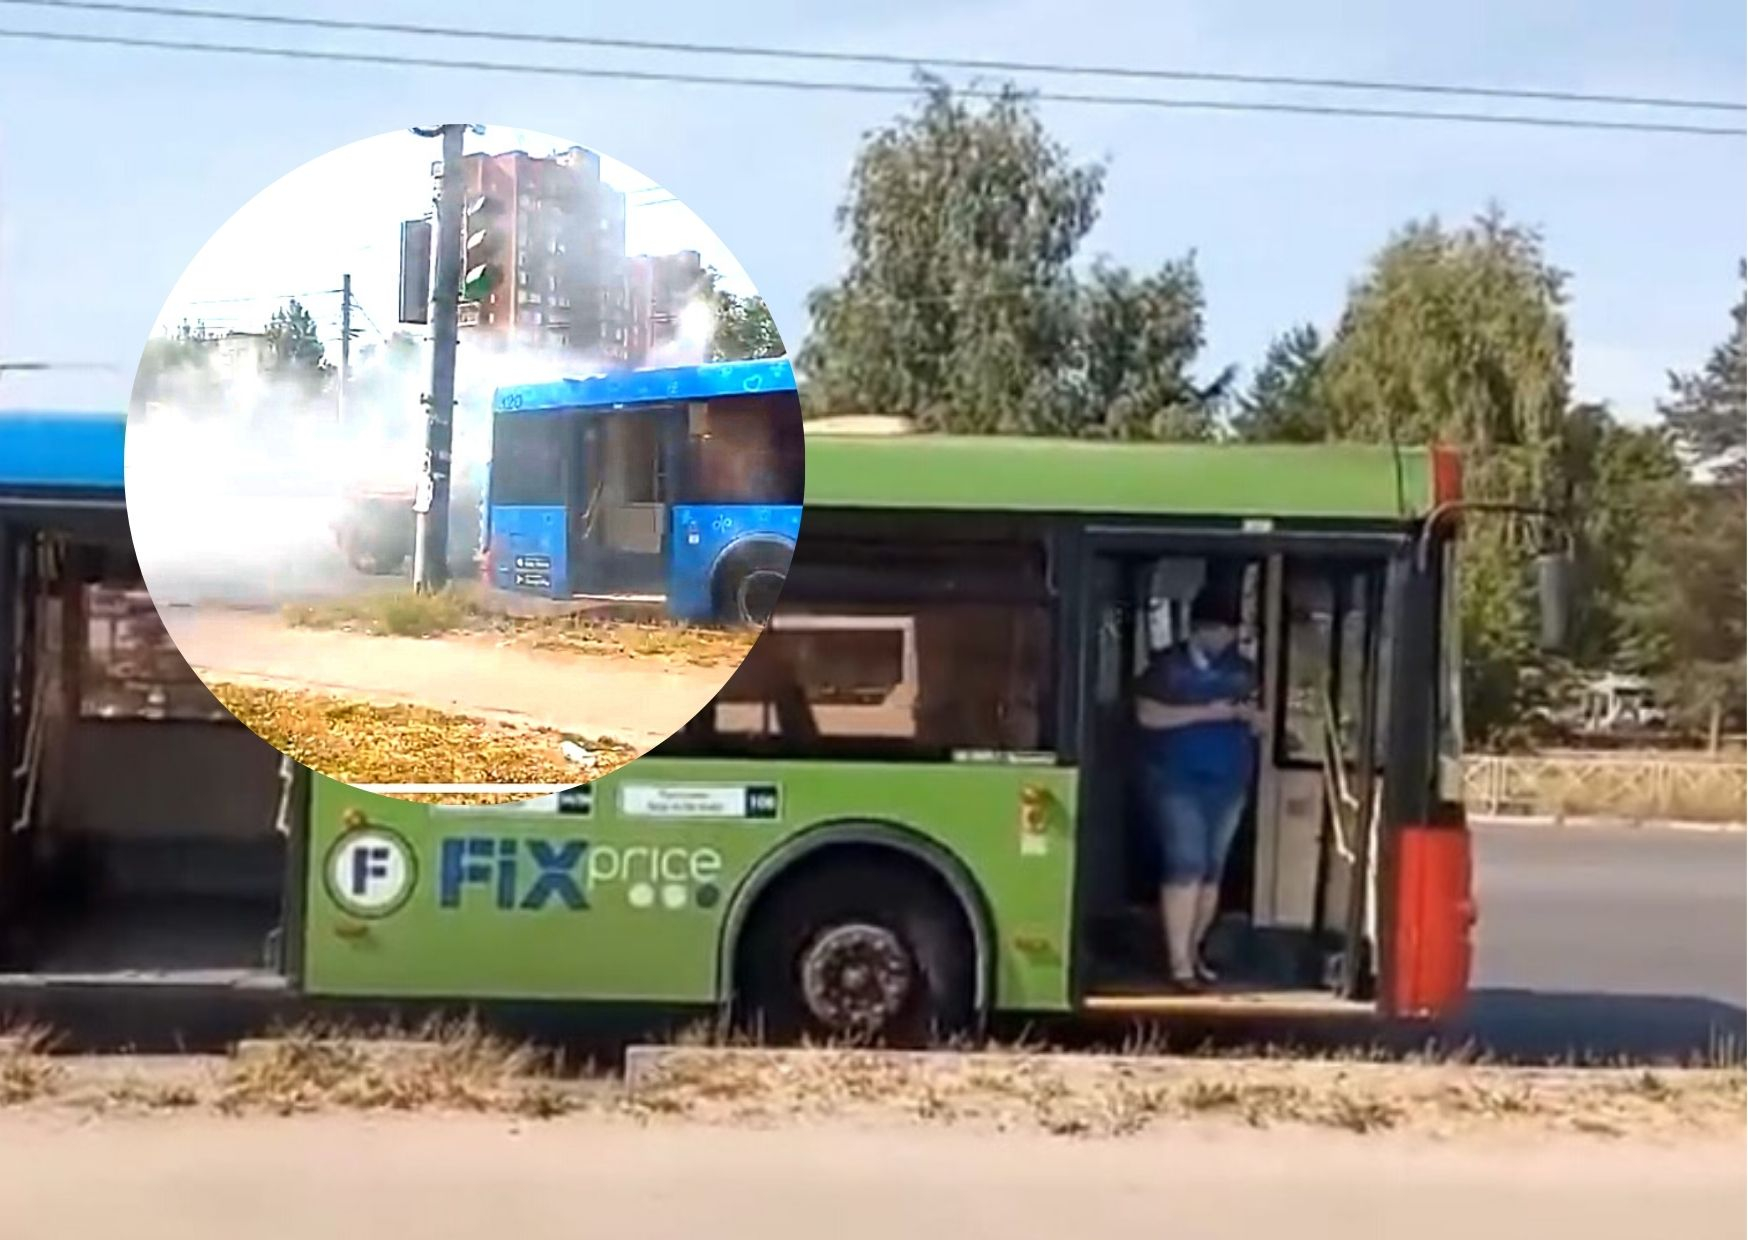 Густой дым заполонил дорогу: в Брагино загорелся пассажирский автобус. Видео